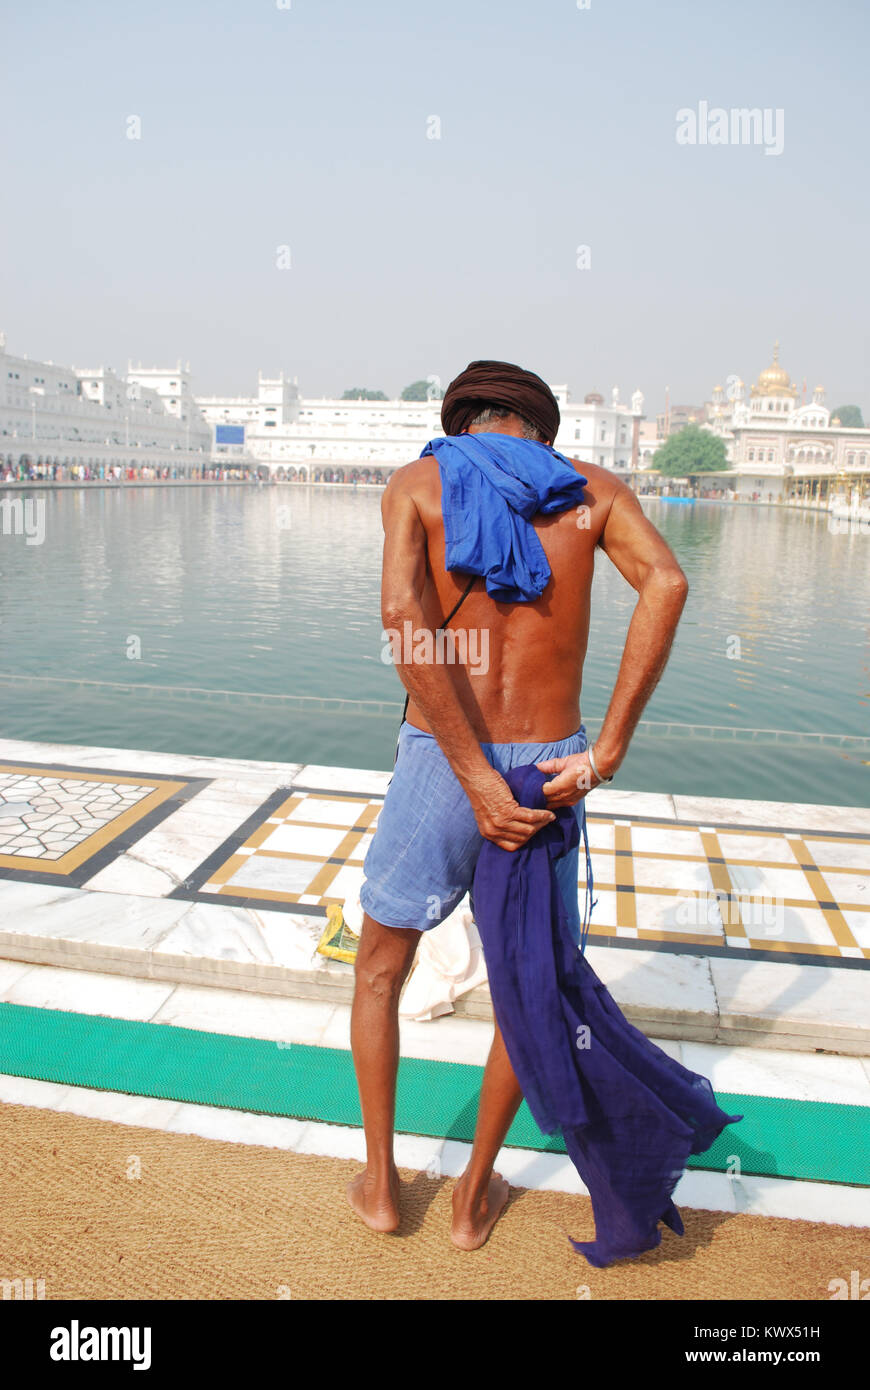 Un Sikh s'apprête à se baigner dans les eaux au Sri Harmandir Sahib, également connu sous le nom de Golden Temple, Amritsar, Inde Banque D'Images